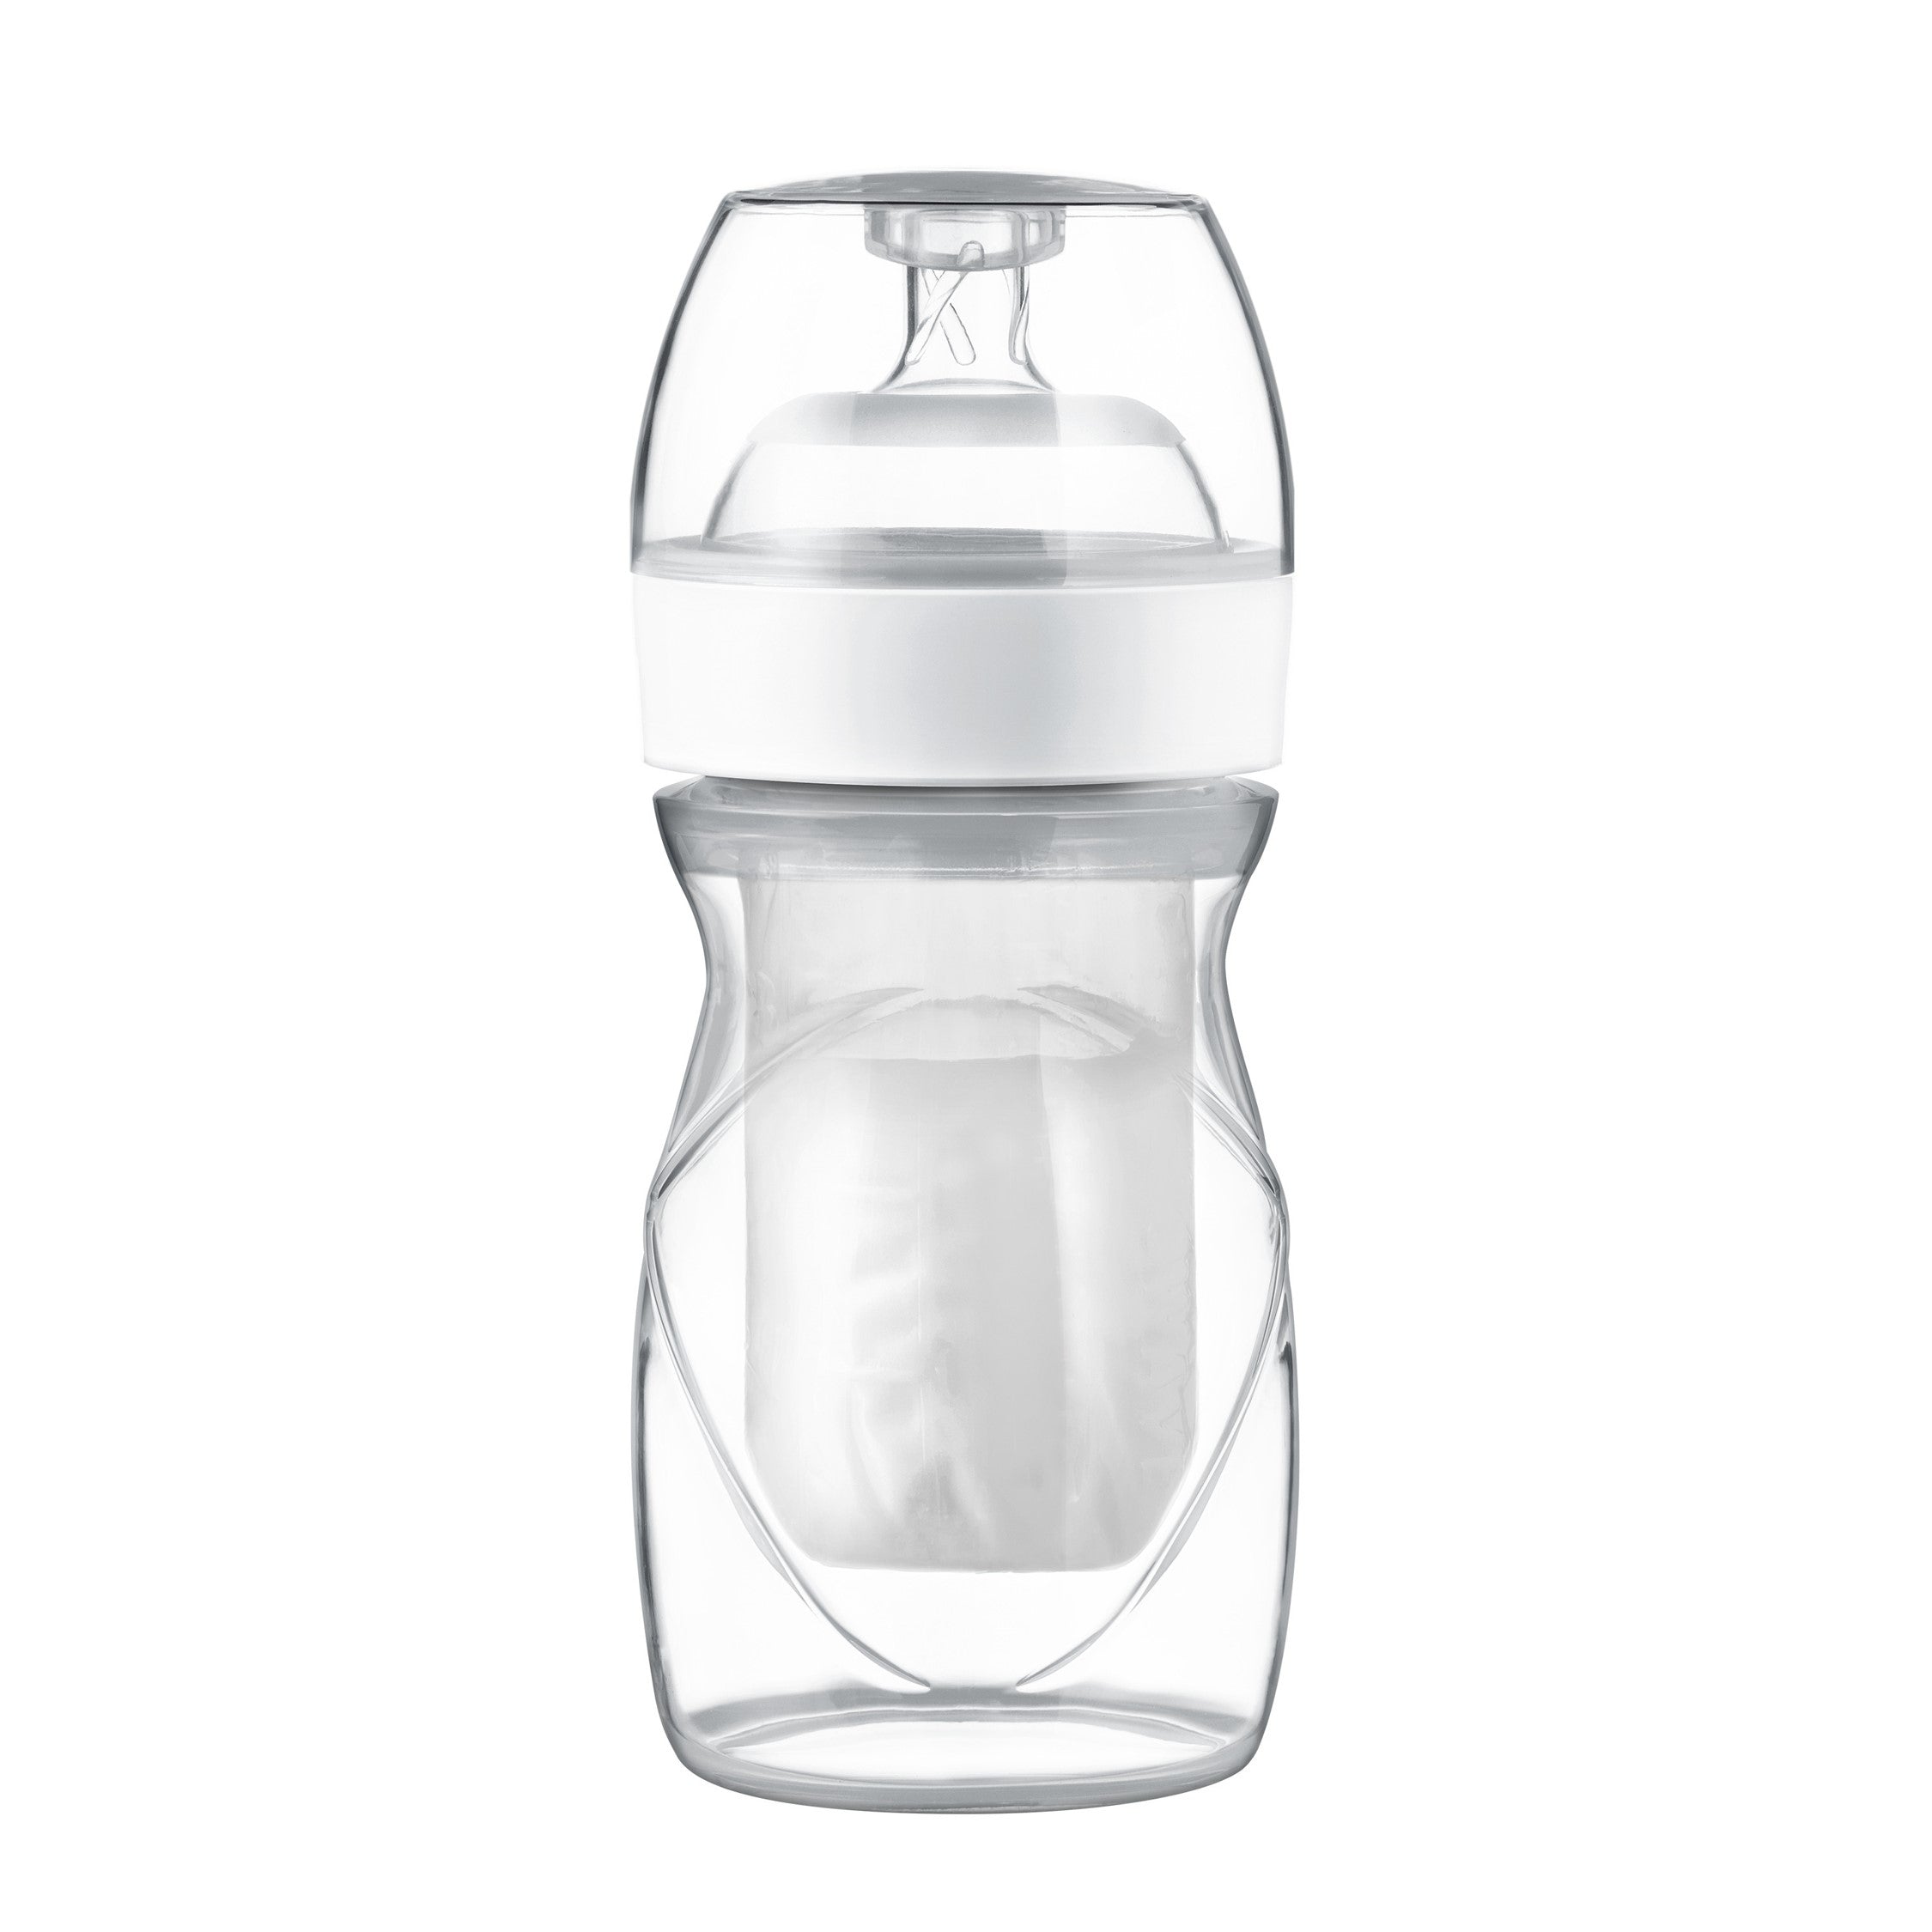 Playtex Baby™ Nurser Bottles with Drop-Ins® Liners - 3 Pack 8 oz –  PlaytexBaby